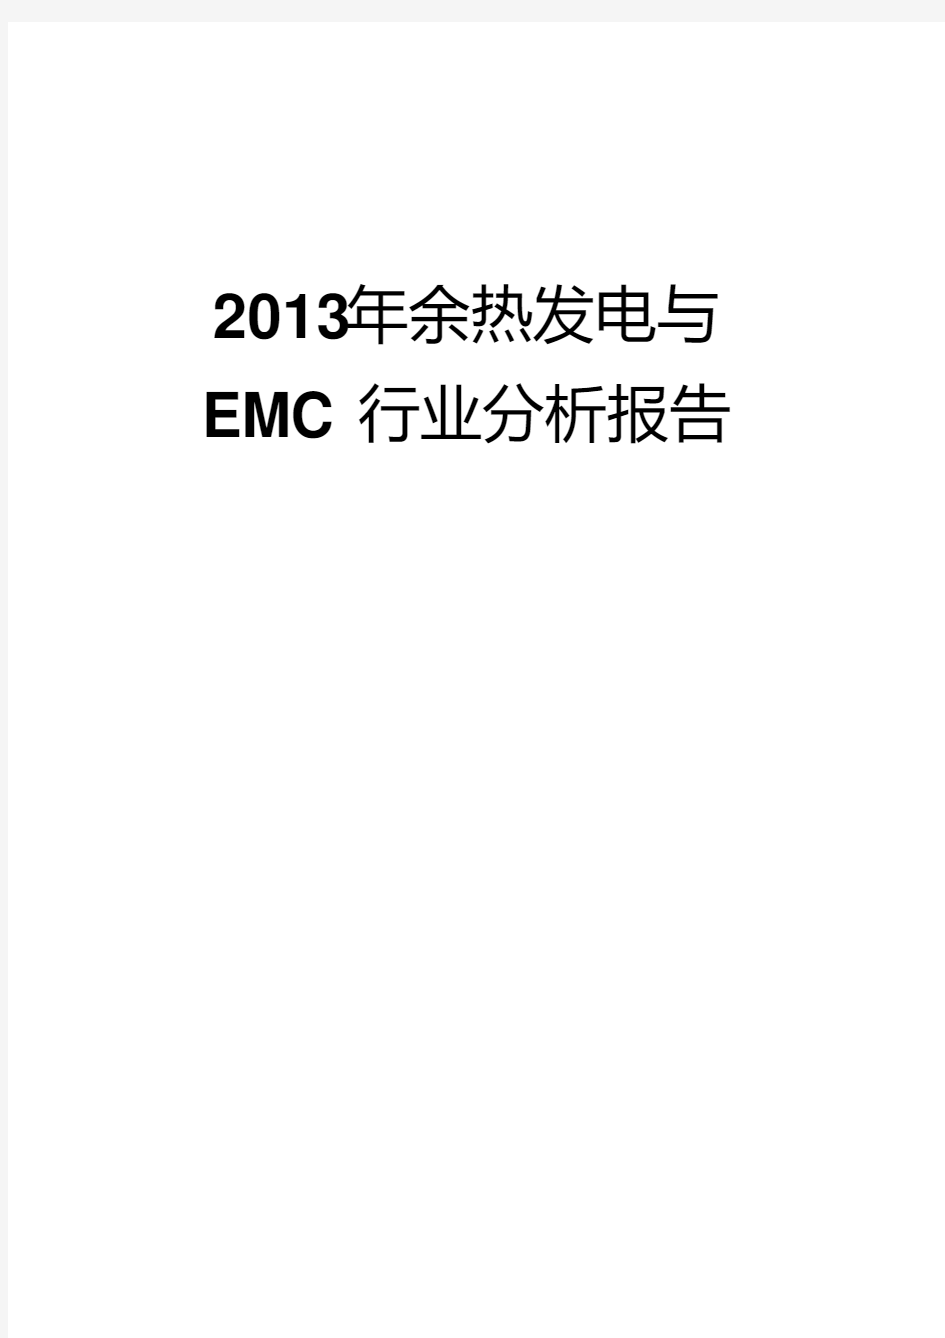 2013年余热发电与EMC行业分析报告